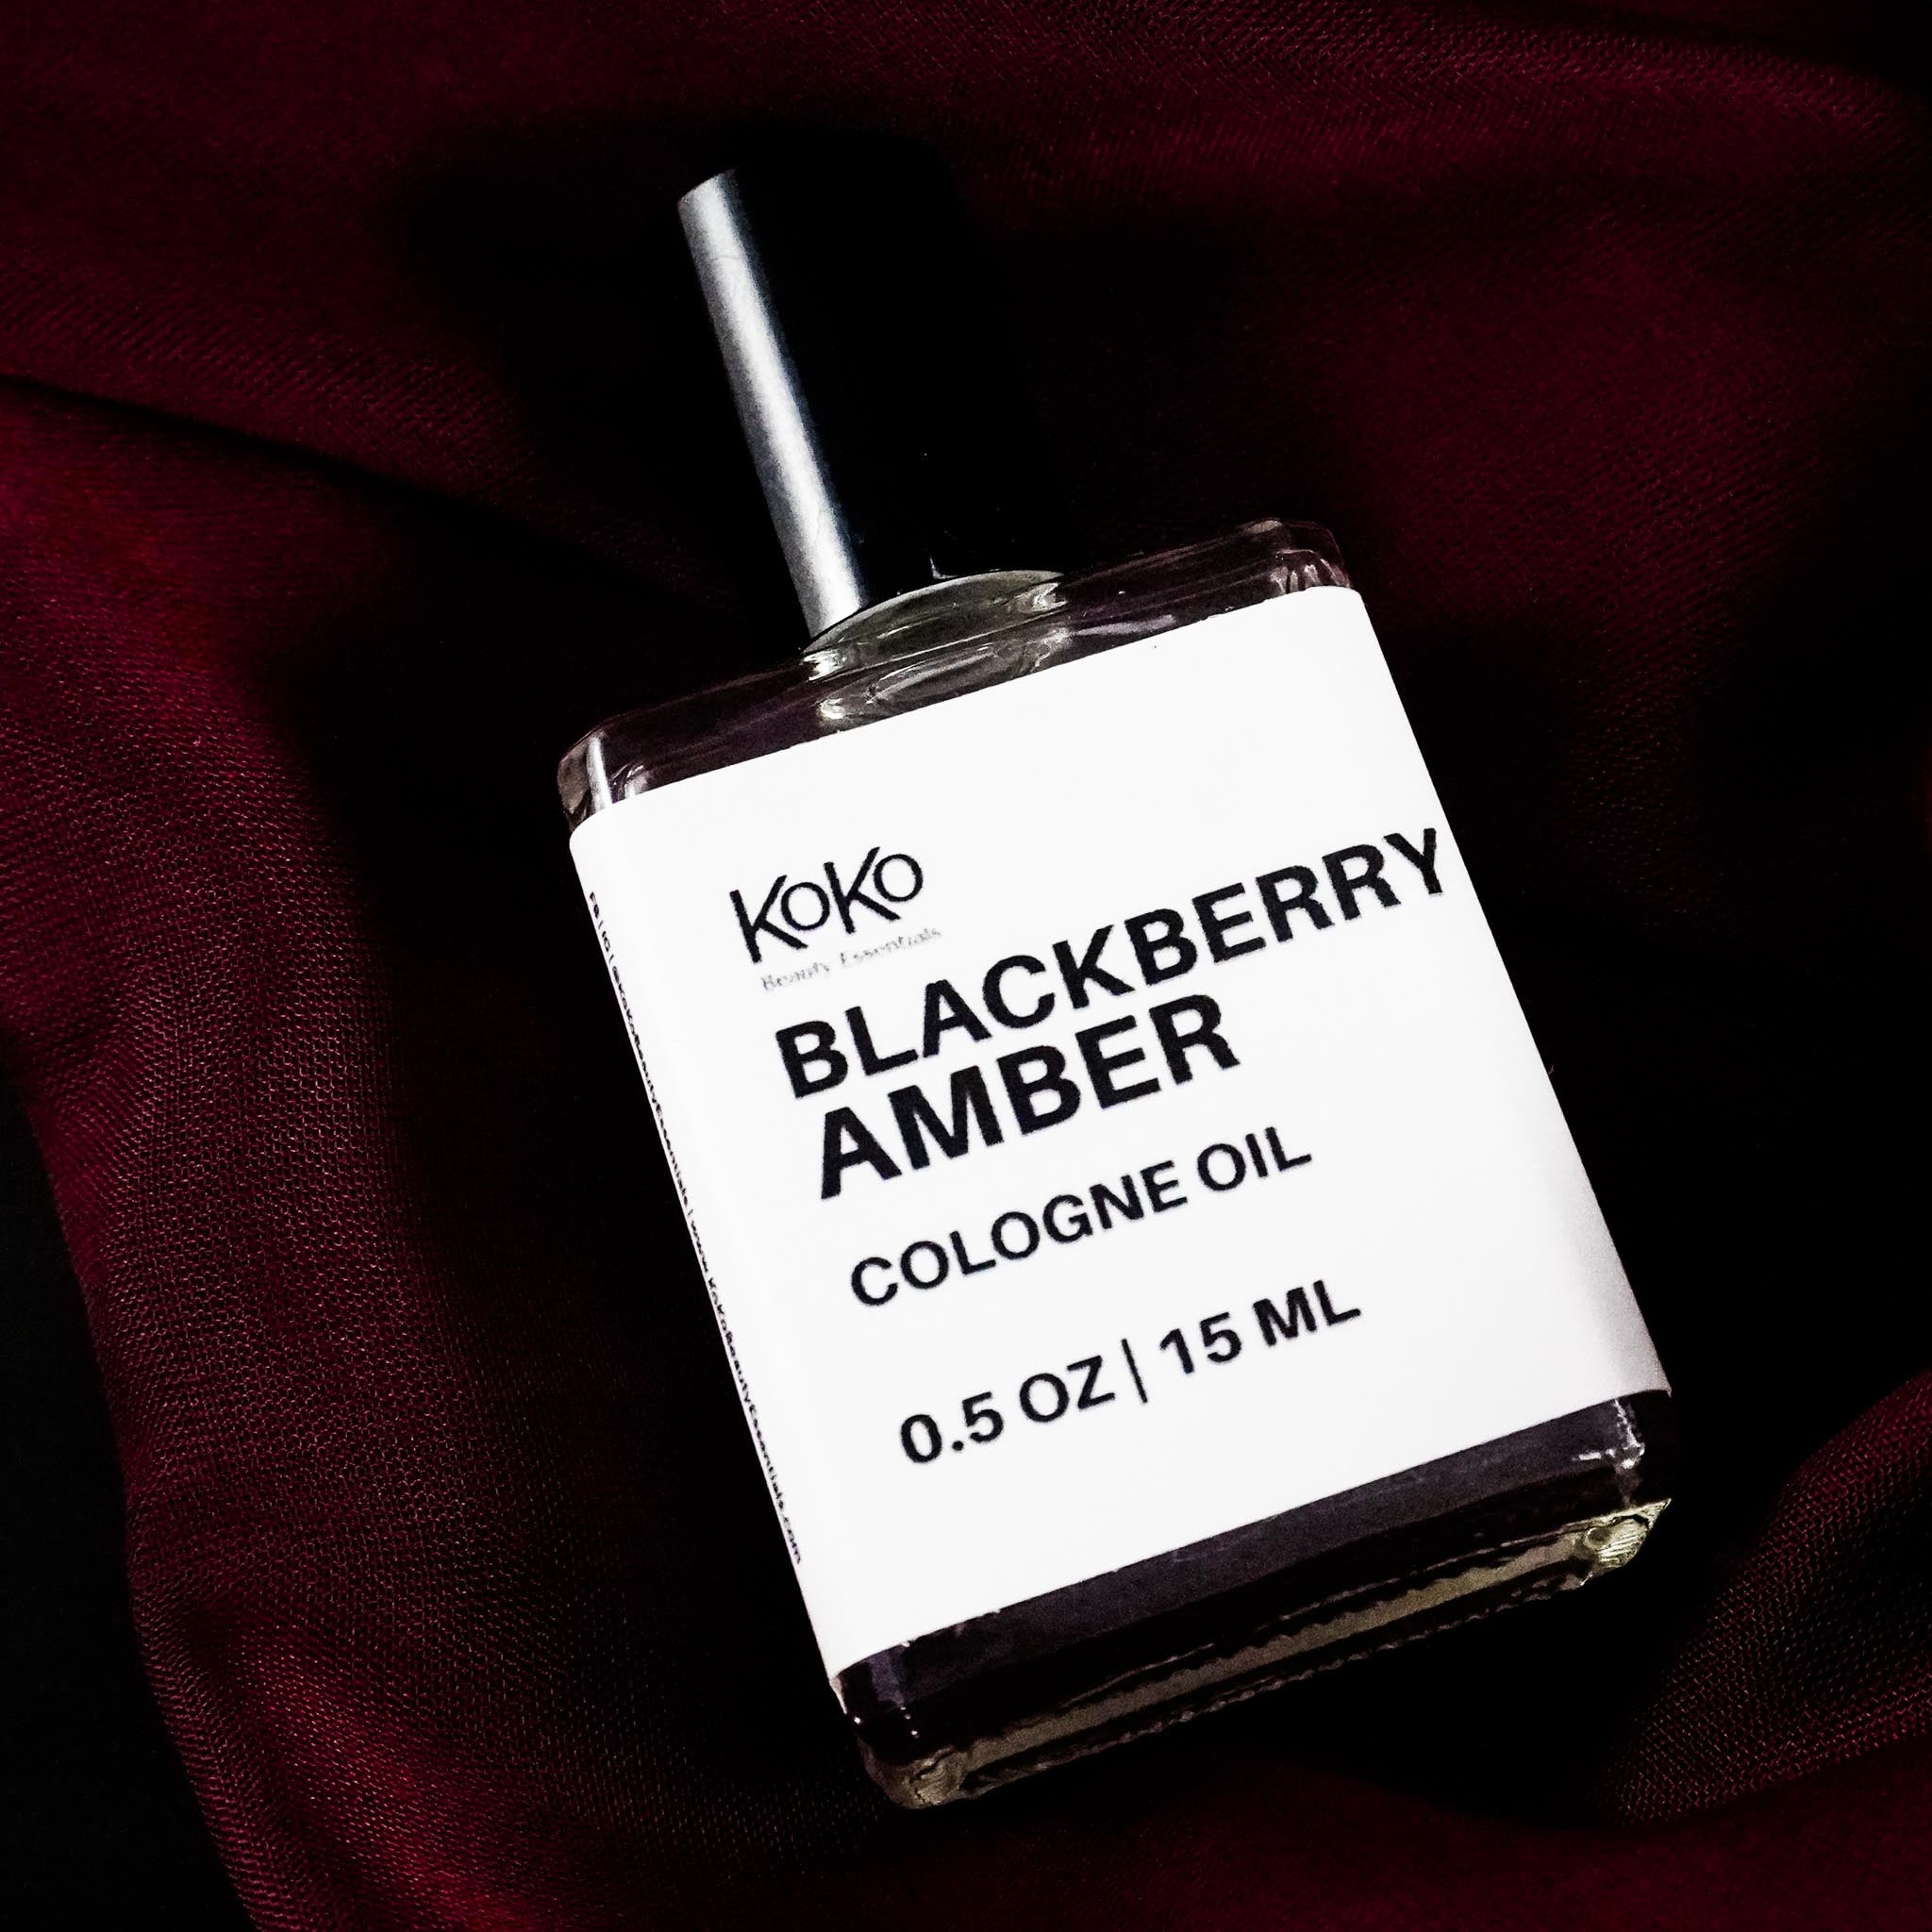 Blackberry Amber Cologne Oil